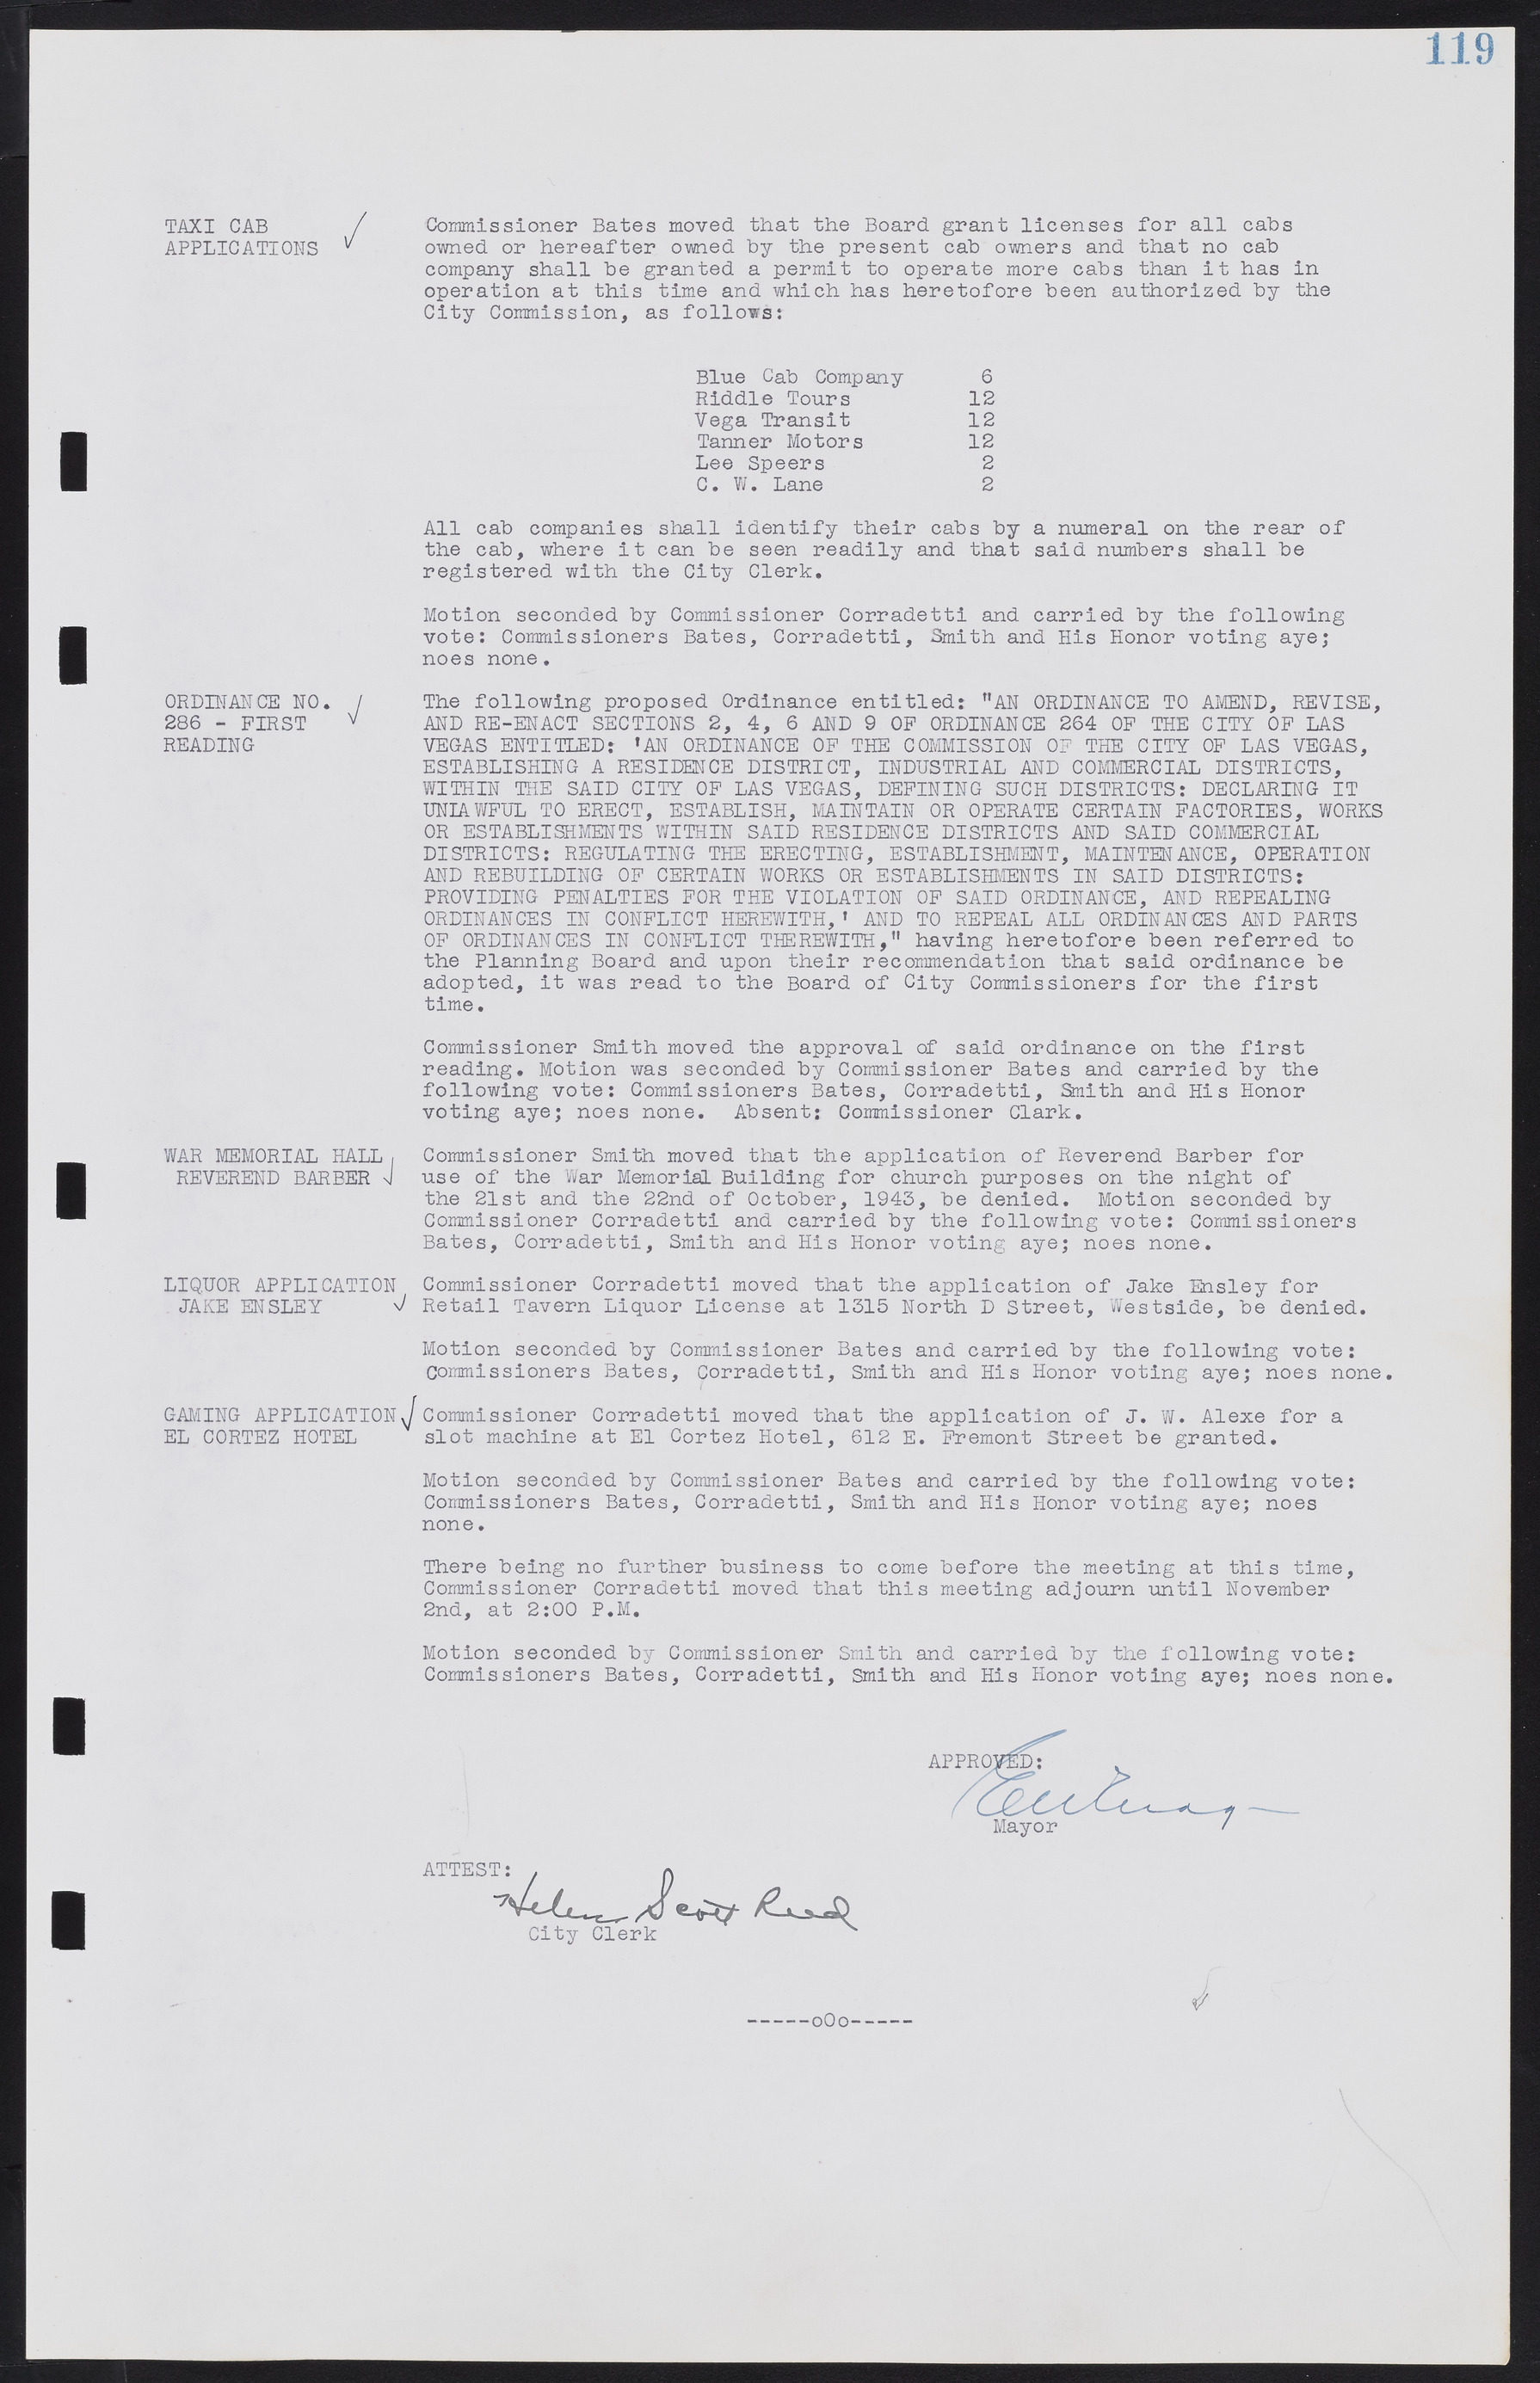 Las Vegas City Commission Minutes, August 11, 1942 to December 30, 1946, lvc000005-133